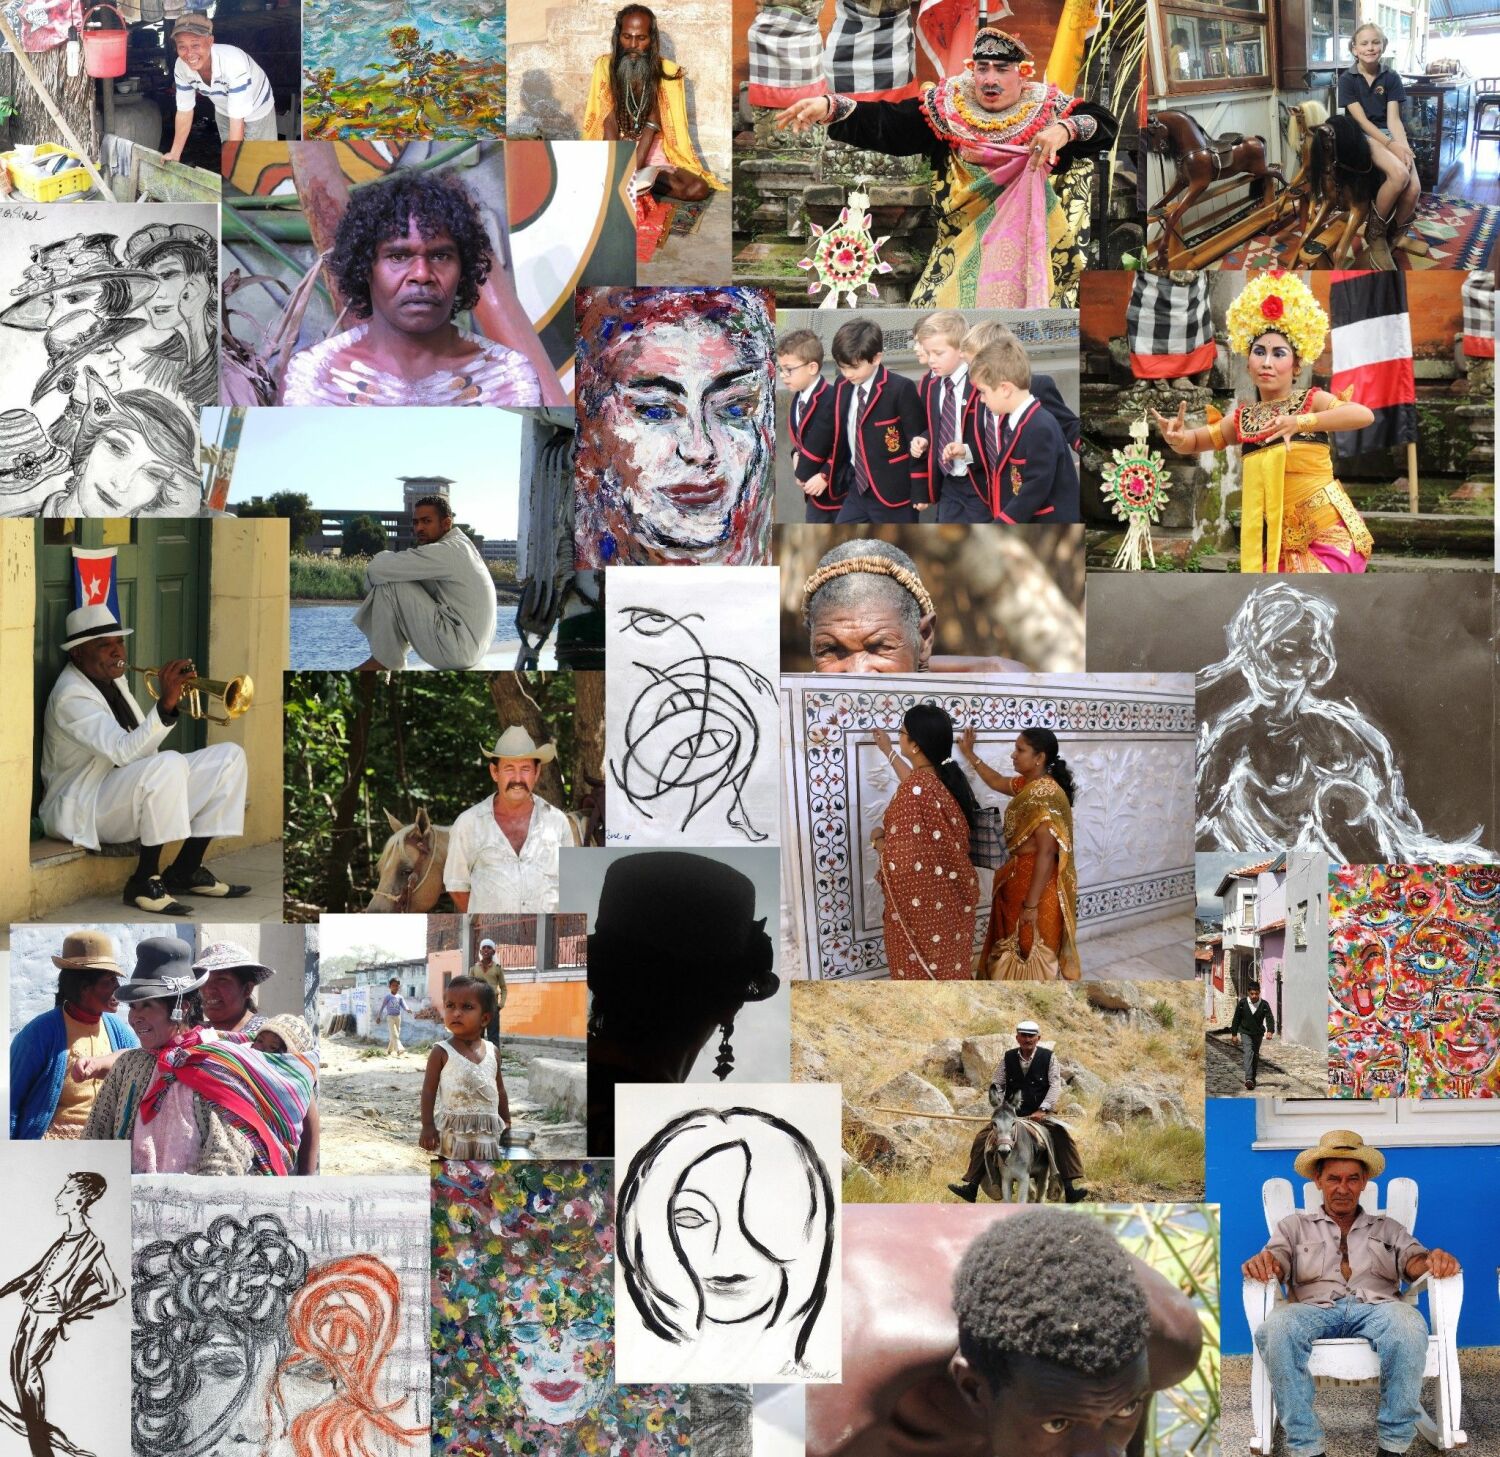 Plakat der Ausstellung "People and Faces" - eine Collage aus Bildern und Zeichnungen